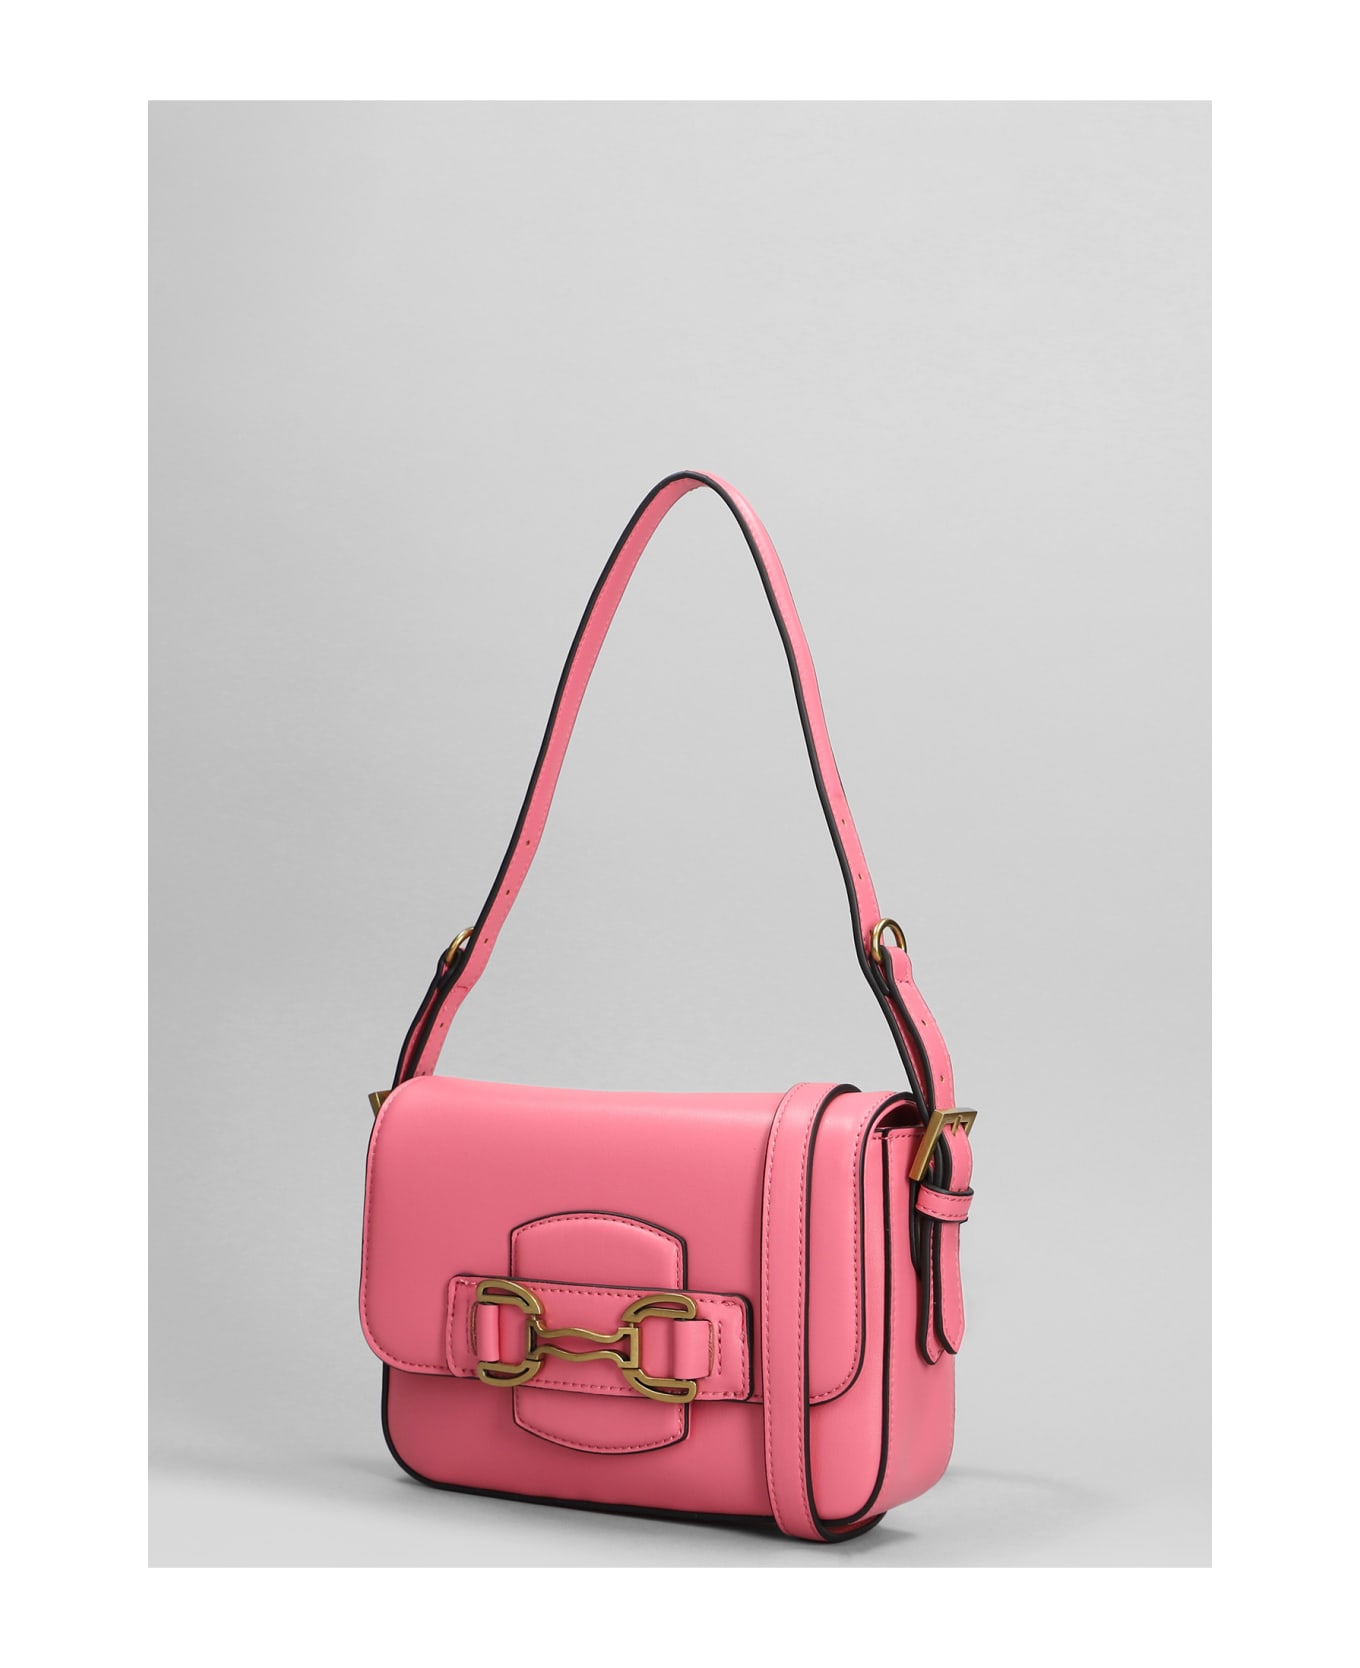 Bibi Lou Shoulder Bag In Rose-pink Leather - rose-pink